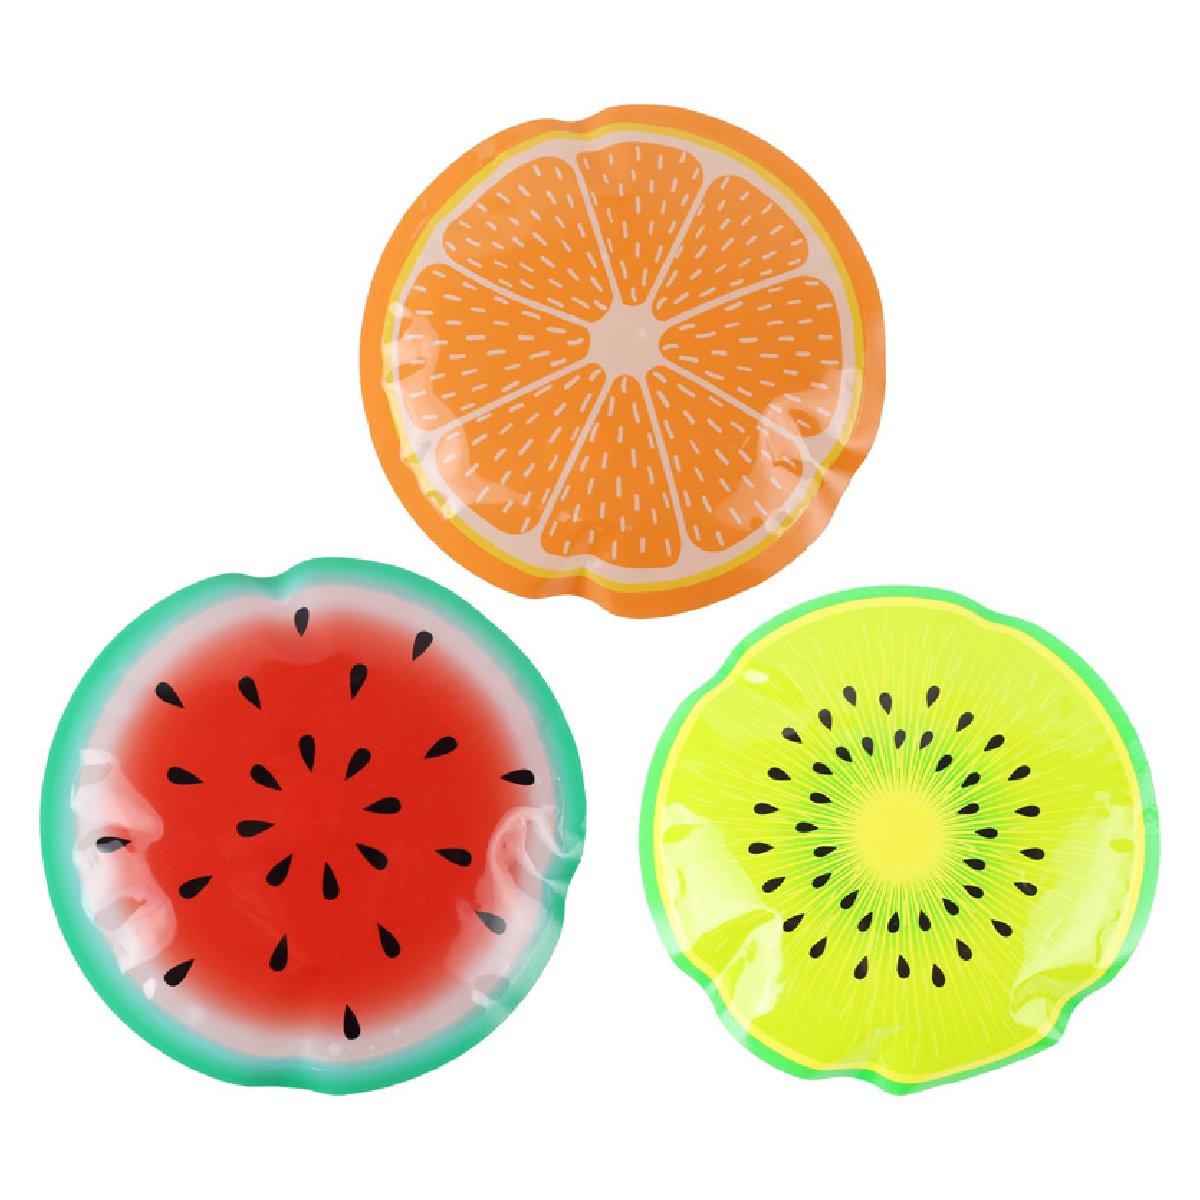   Fruits 150 (998210)